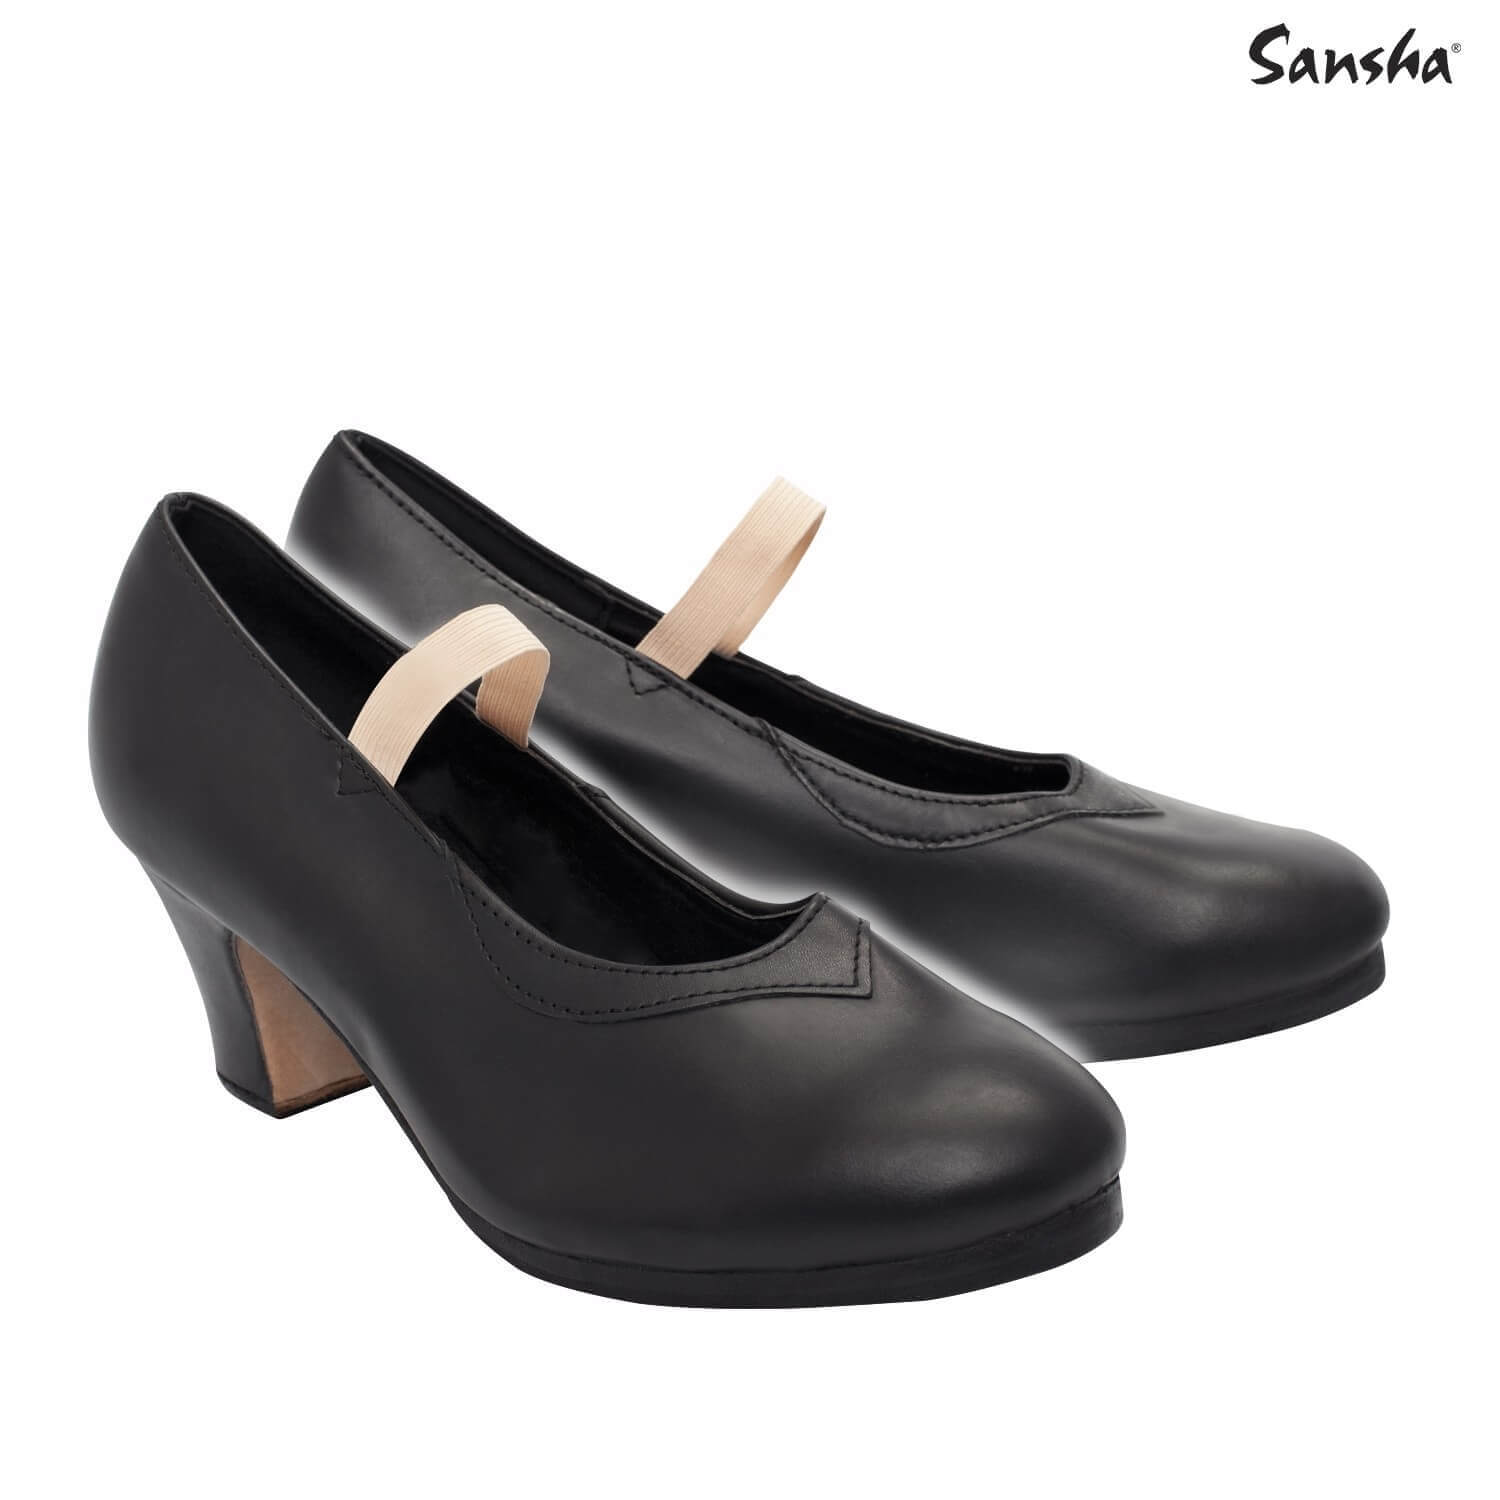 Sansha "SARAGOSA" Original flamenco shoes